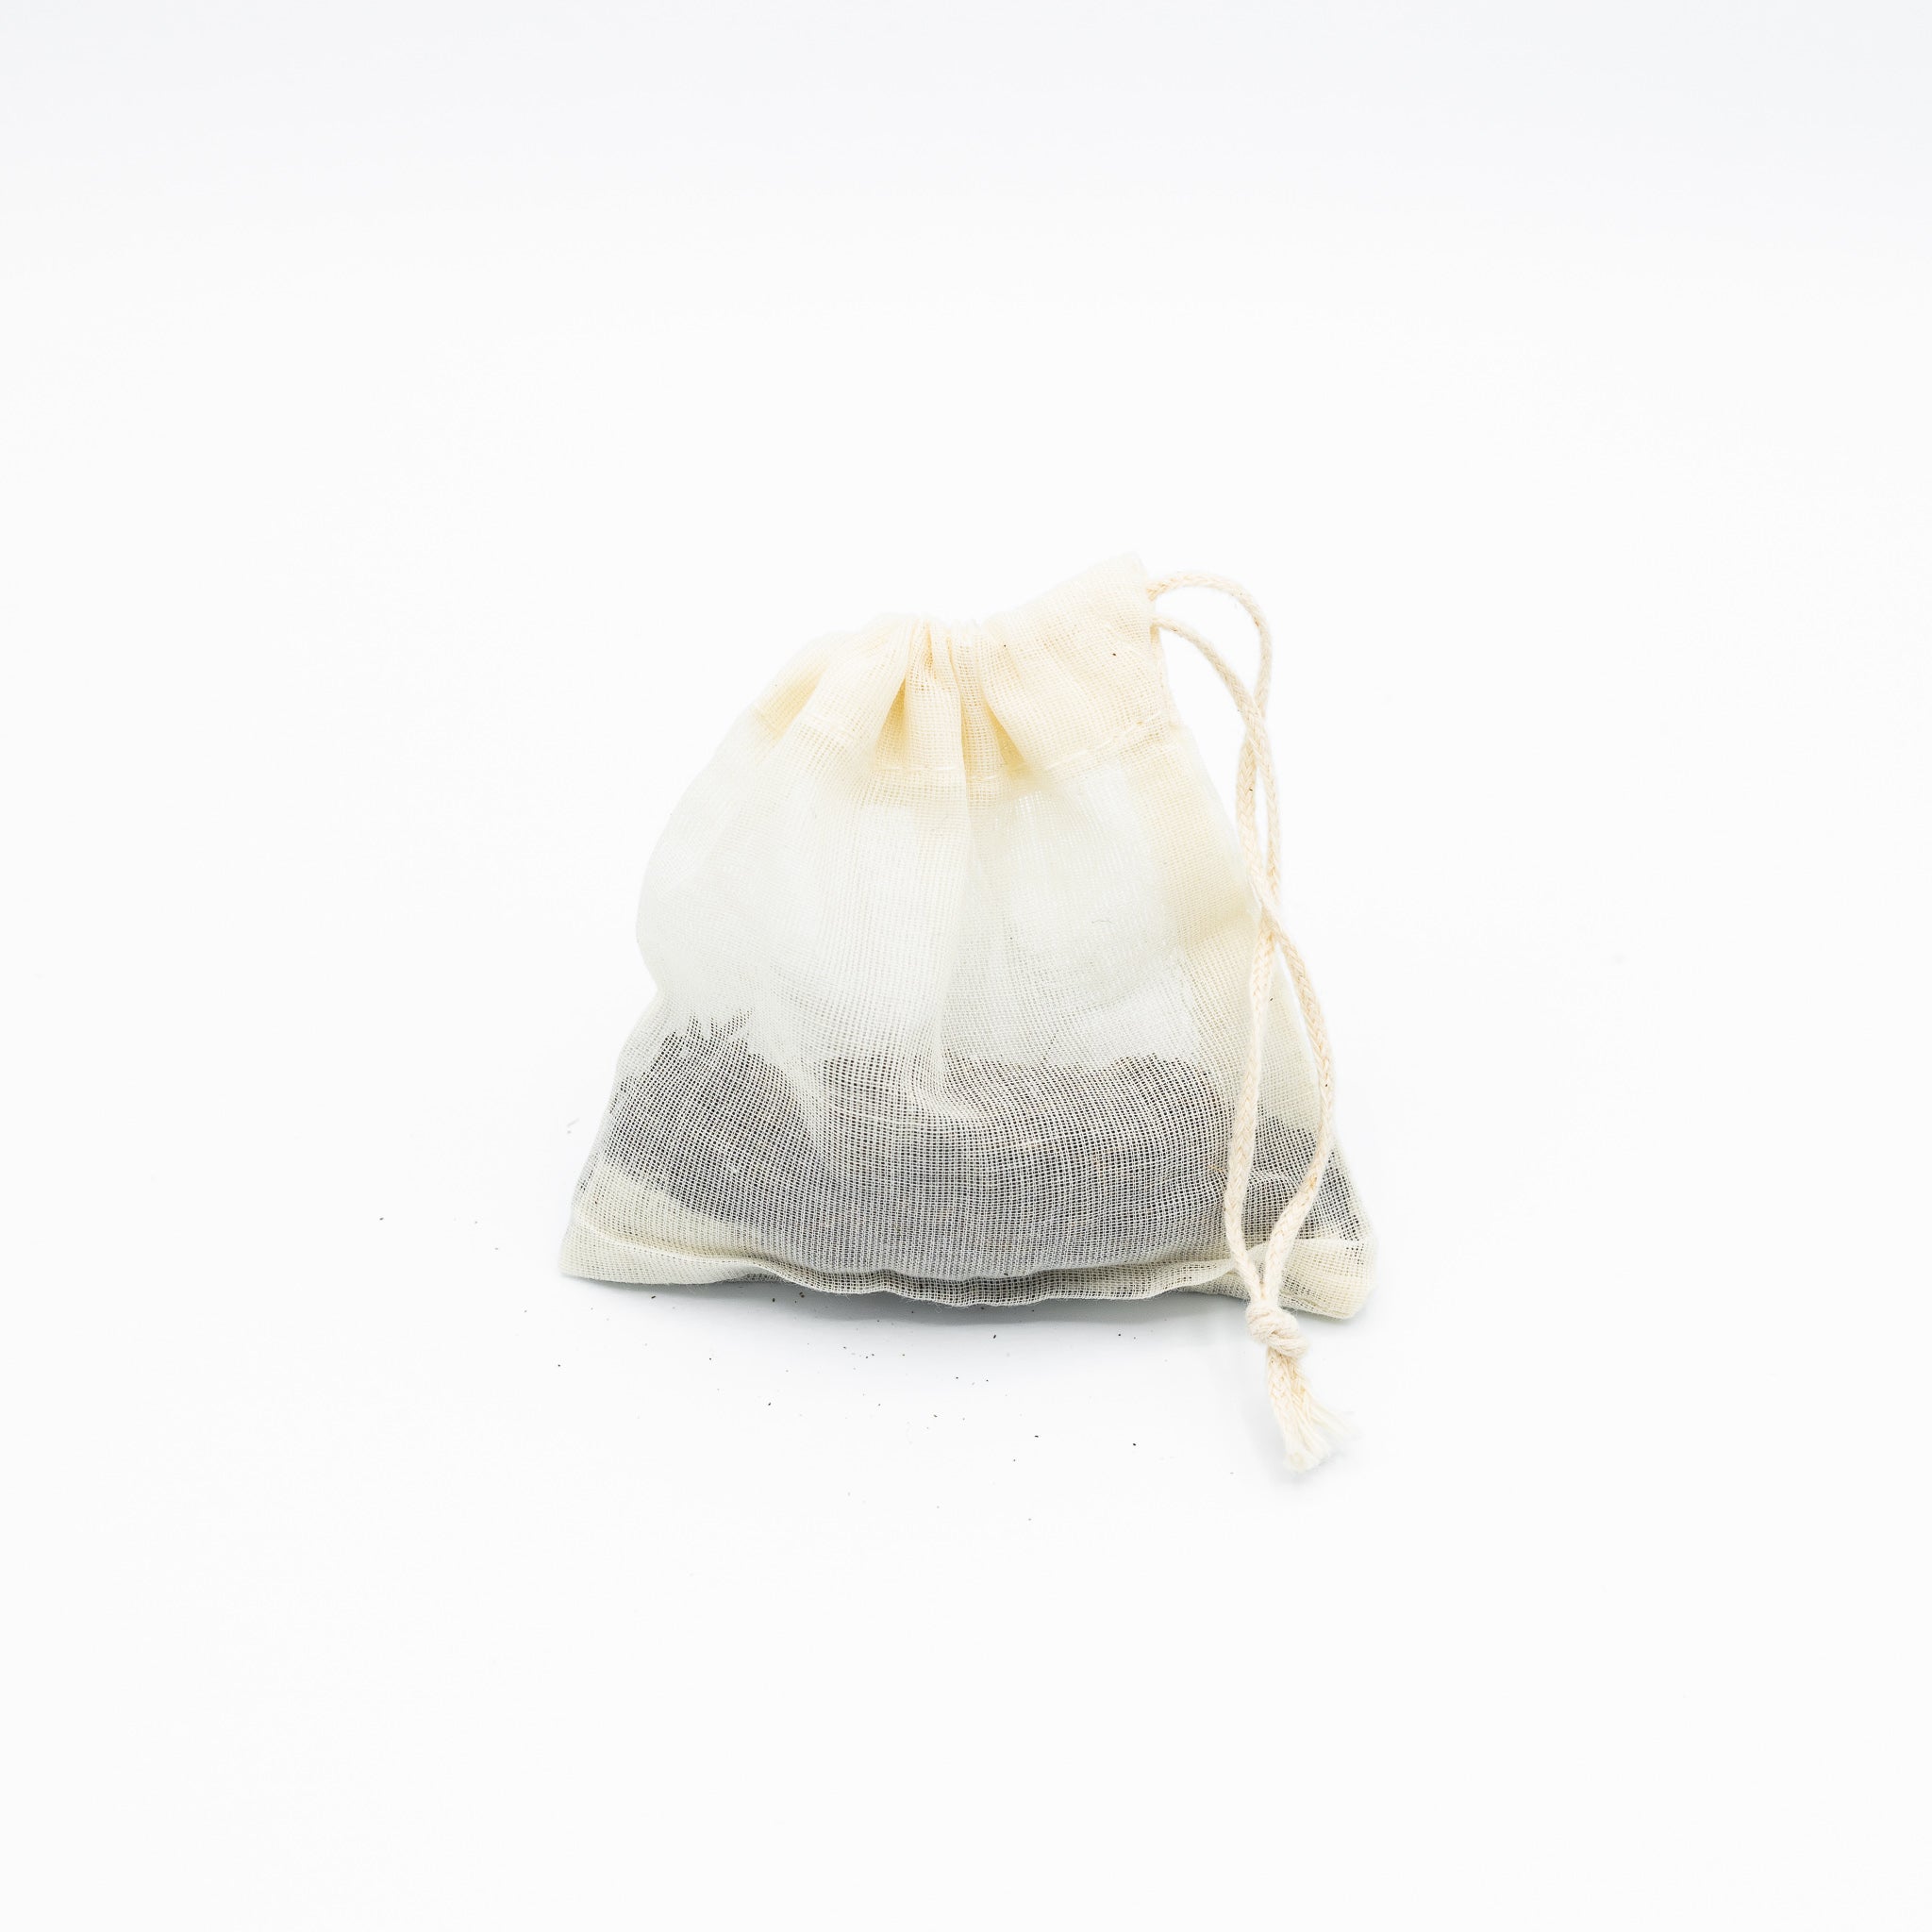 15 perles de céramique – Emballage réutilisable (pochon ou sachet de thé)